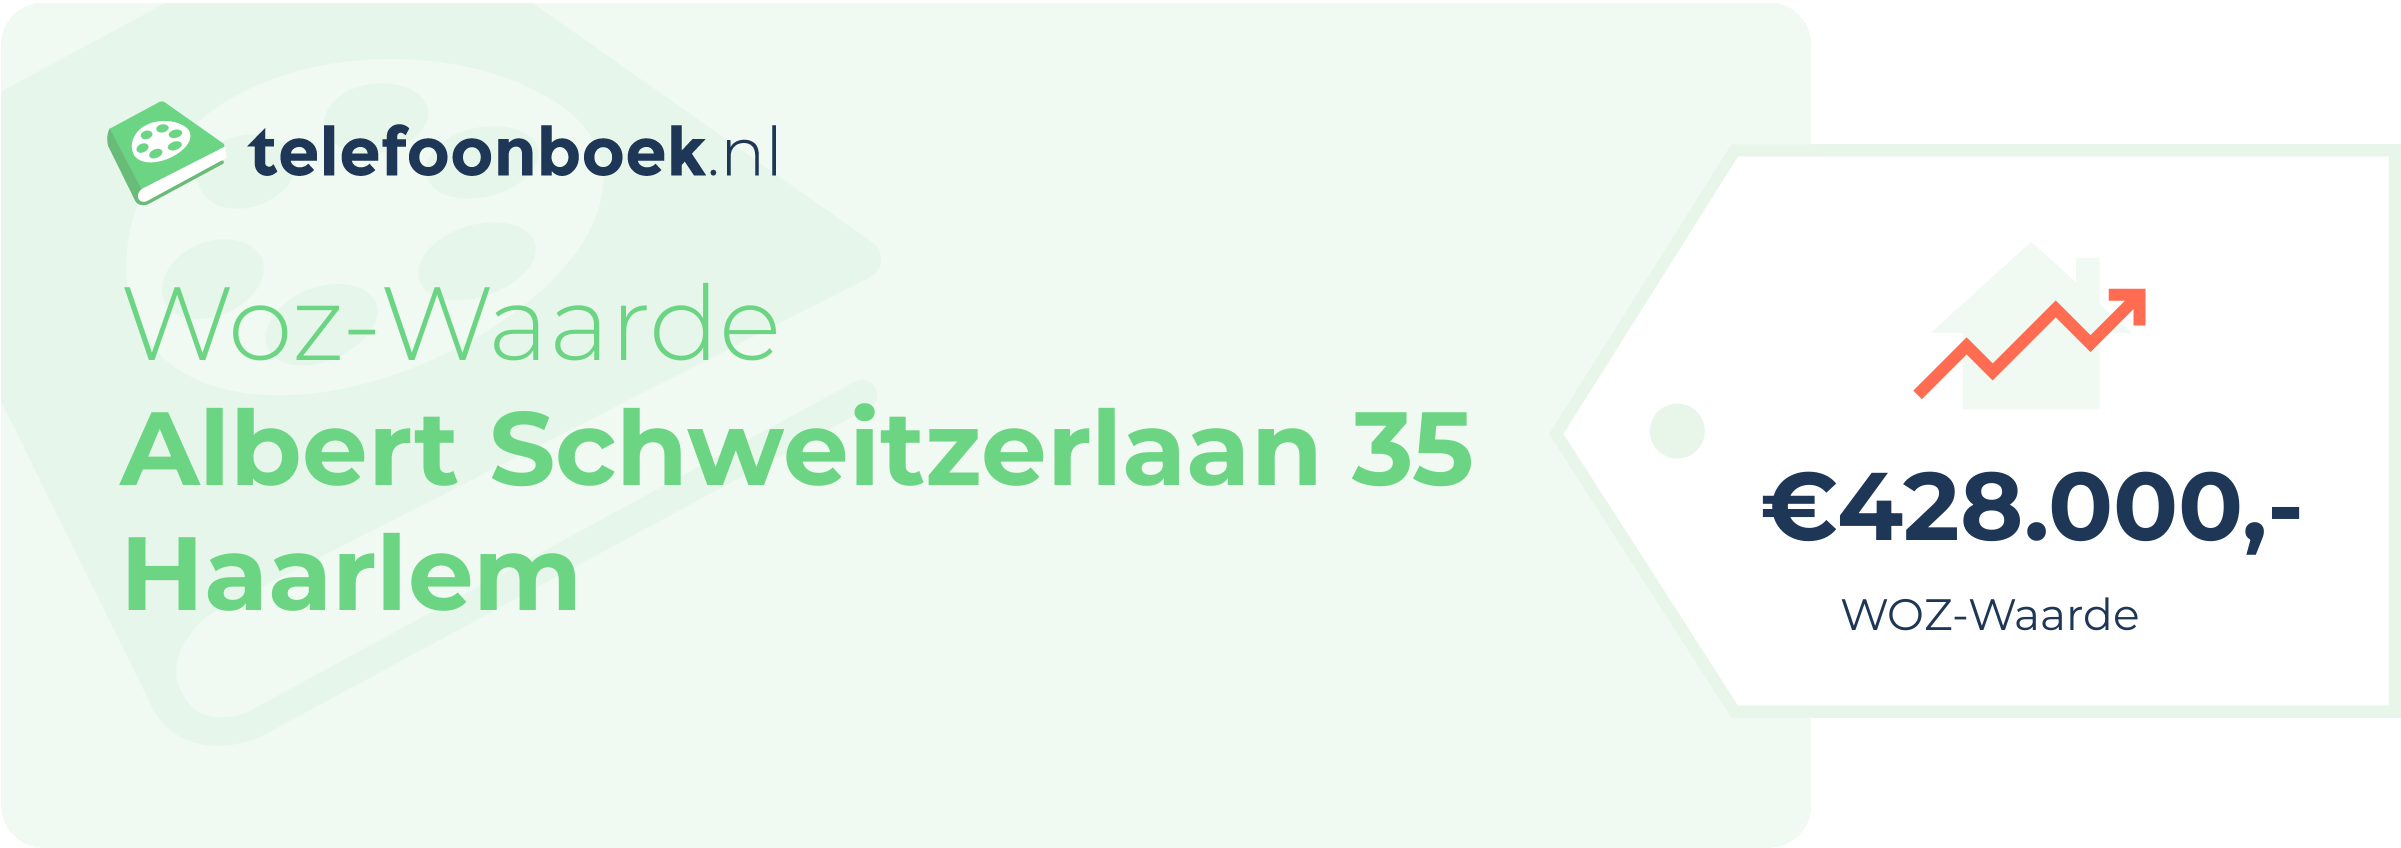 WOZ-waarde Albert Schweitzerlaan 35 Haarlem